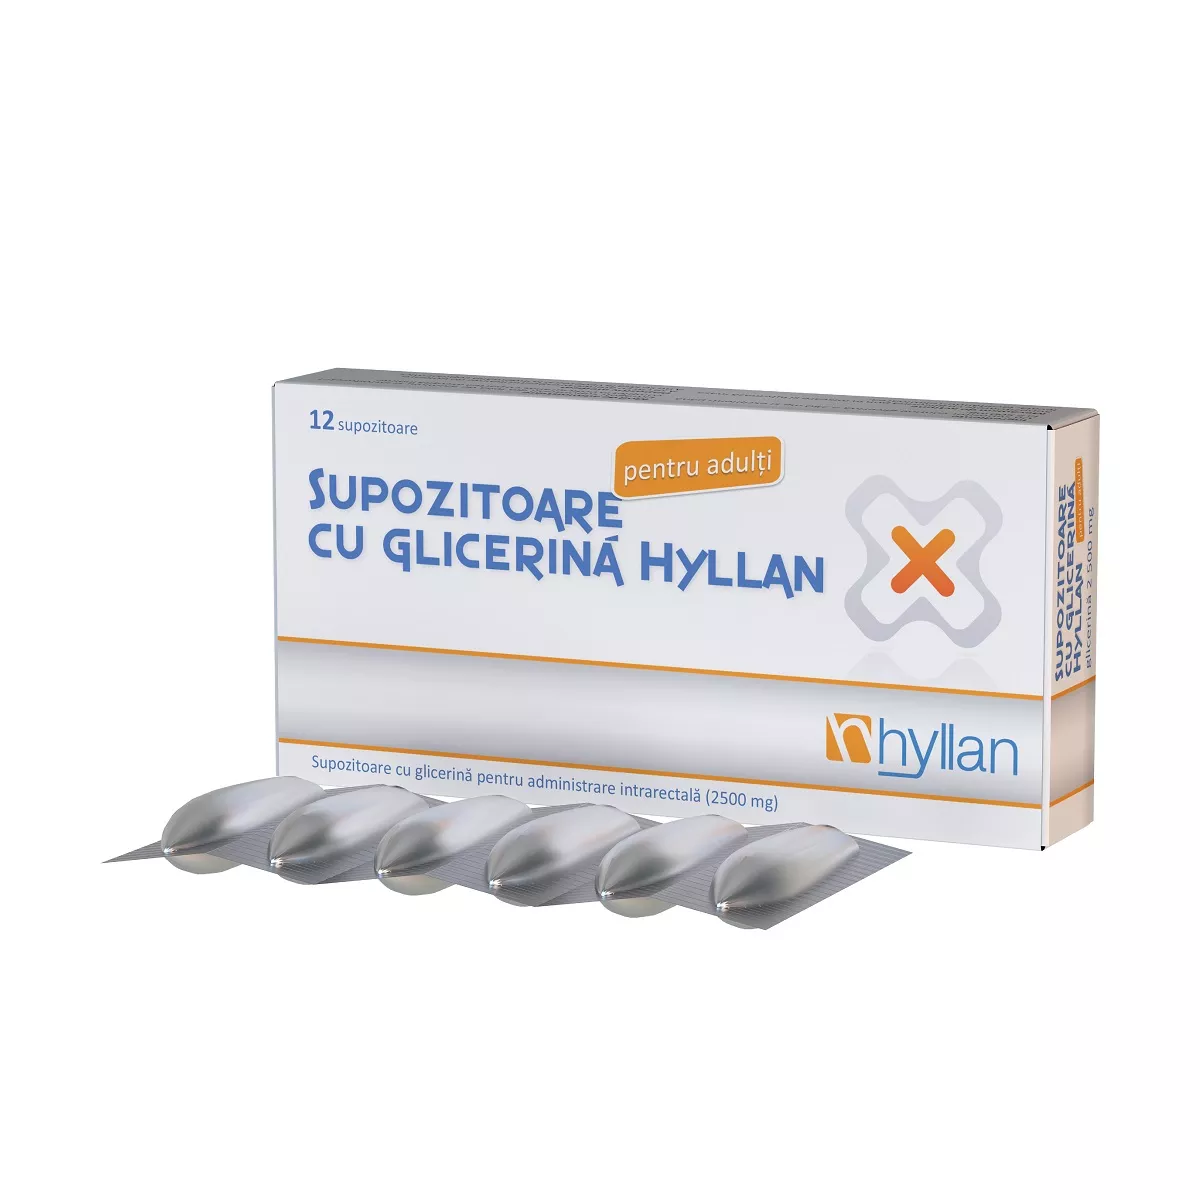 Supozitoare cu glicerina 2500 mg pentru adulti, 12 bucati, Hyllan , [],nordpharm.ro